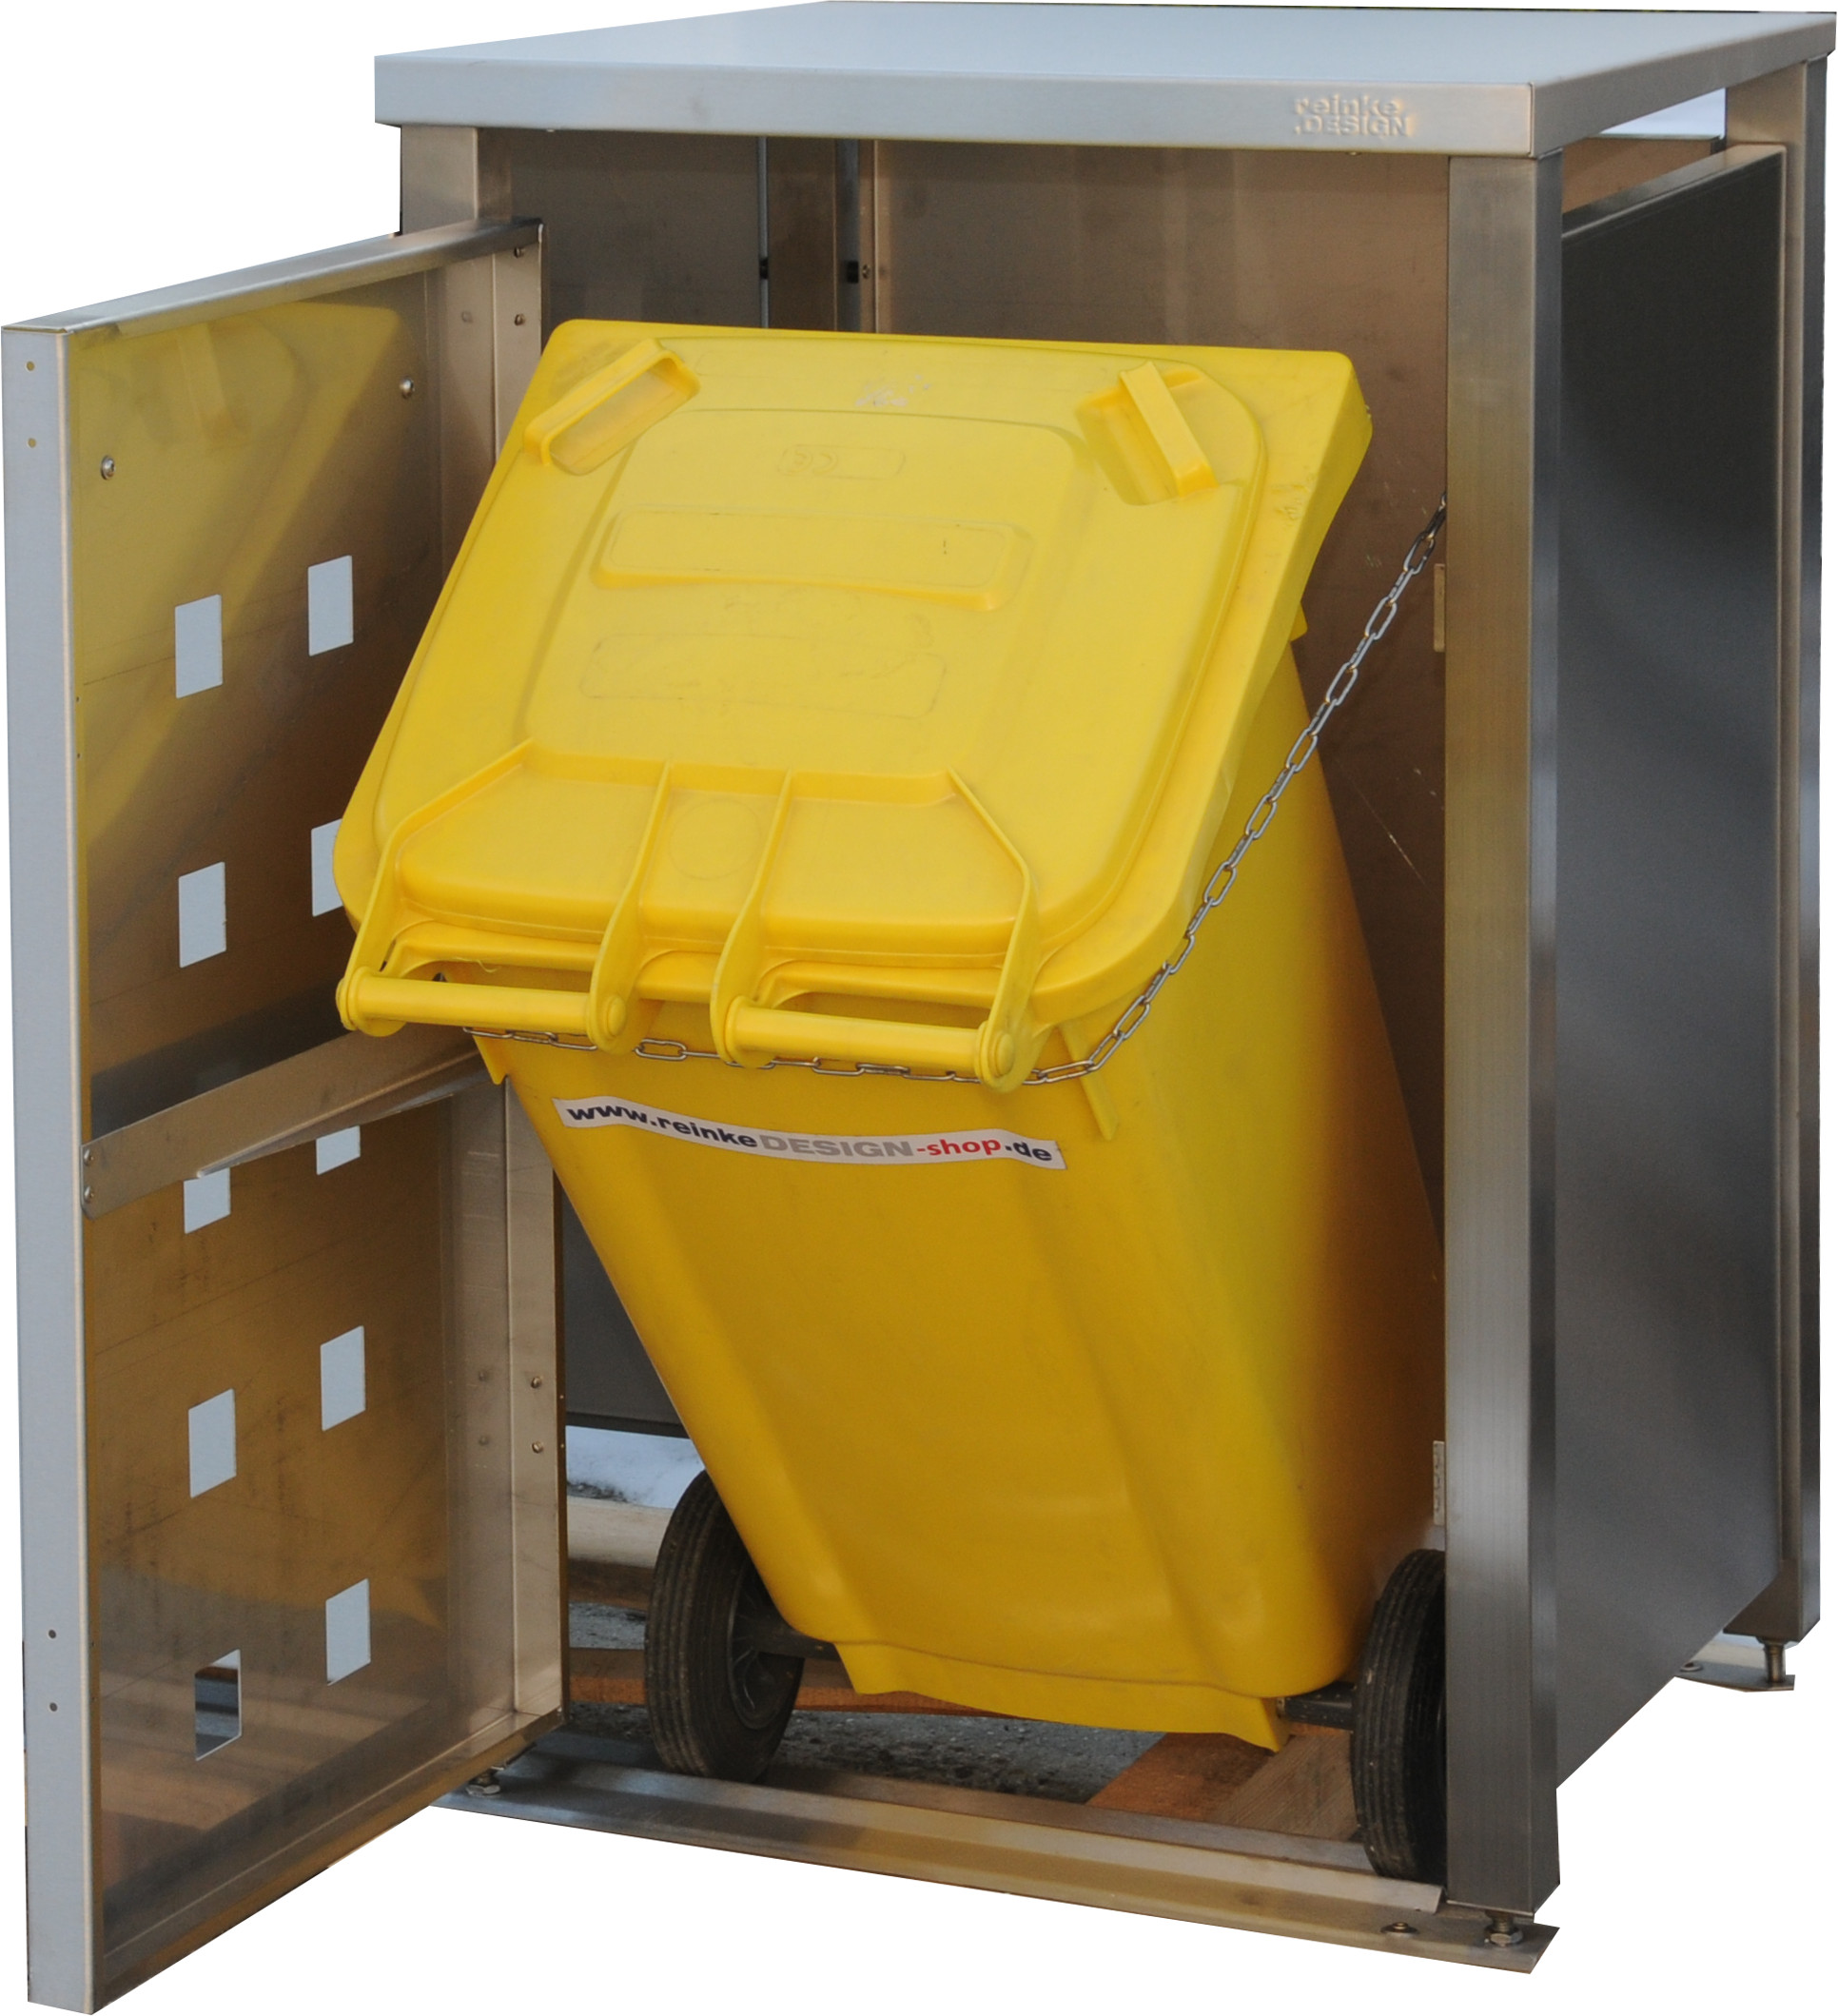 Müllbox Typ-MD, 2x 240l + 2x 120l, Türfarbe Edelstahl